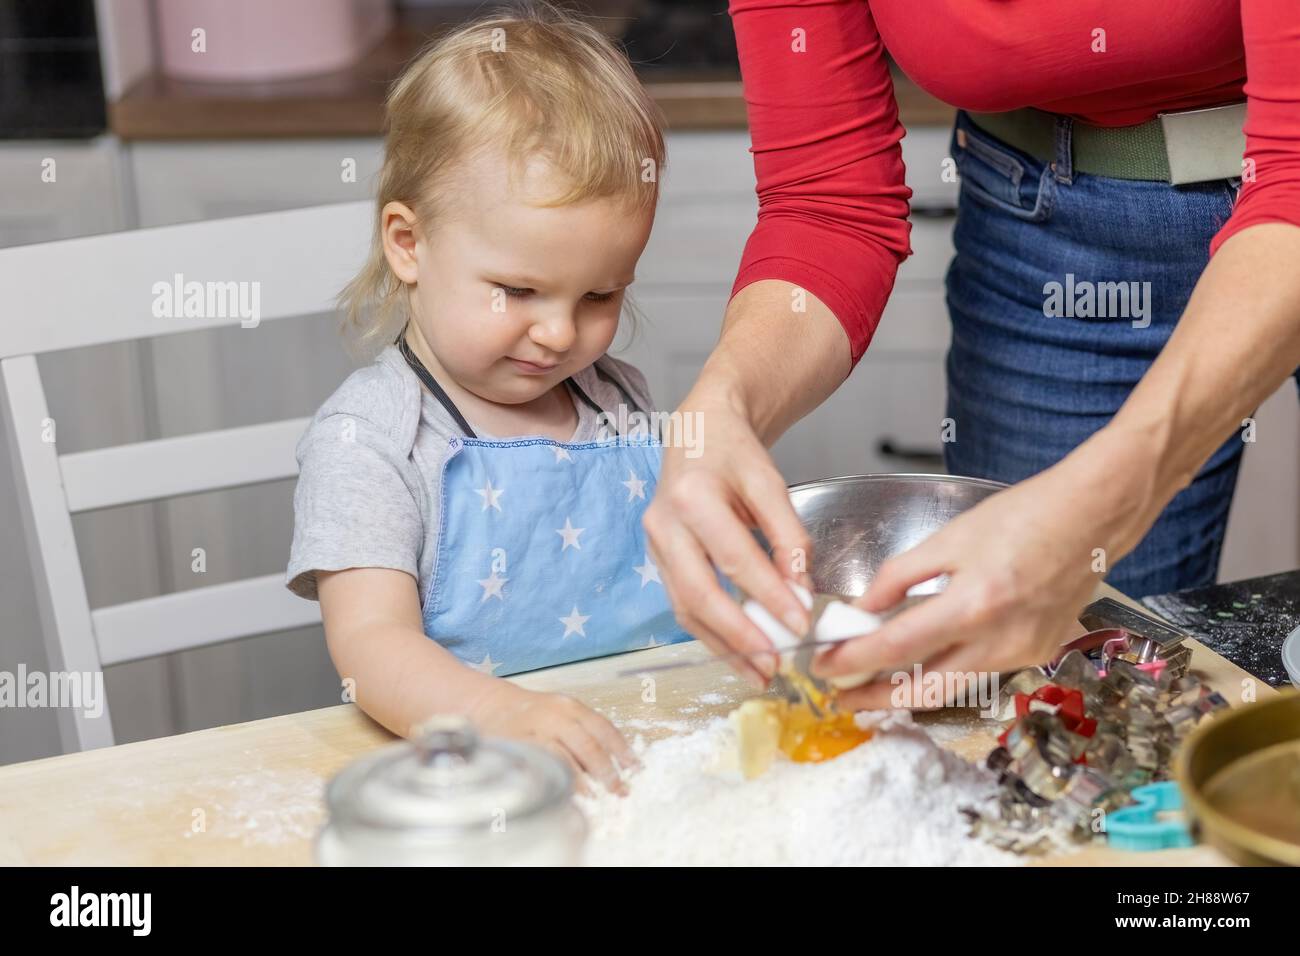 Mignon garçon montres maman met des oeufs dans la farine et prépare la pâte dans la cuisine.Horizontalement. Banque D'Images